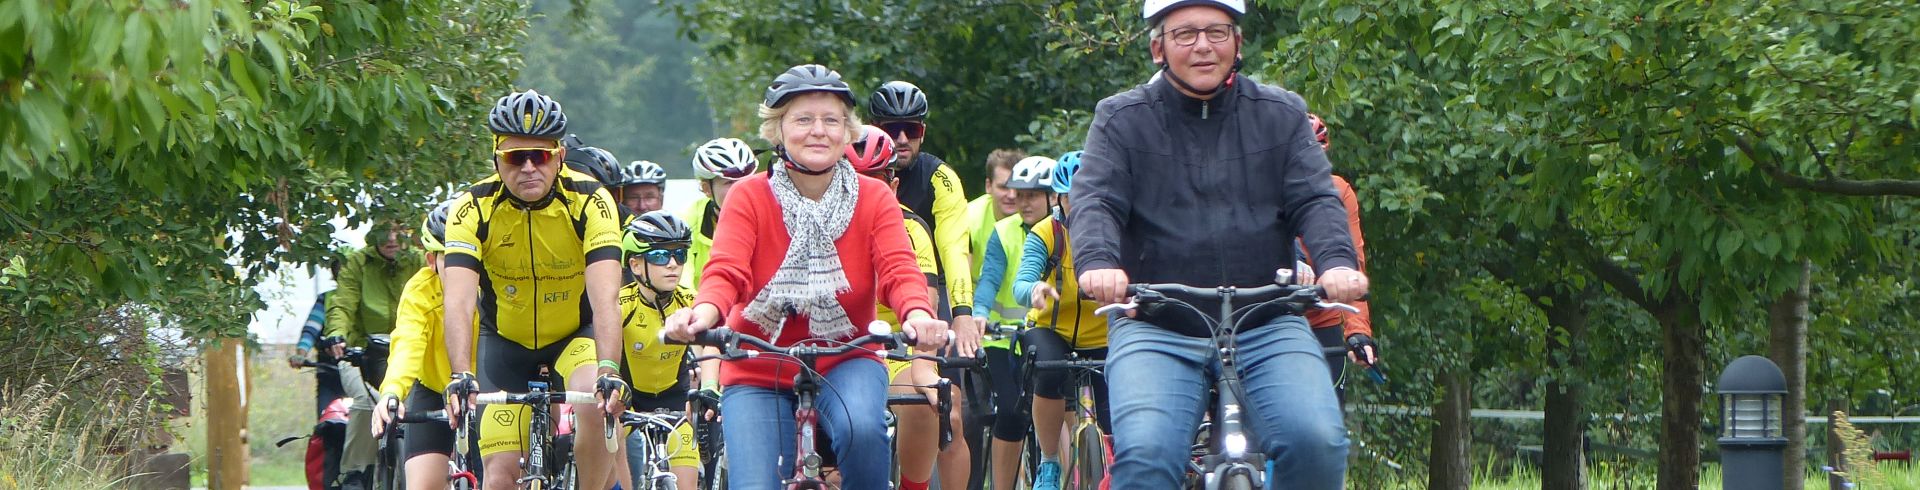 Auftakt Stadtradeln 2021: Radfahrer*innen in Sport- und Freizeitkleidung